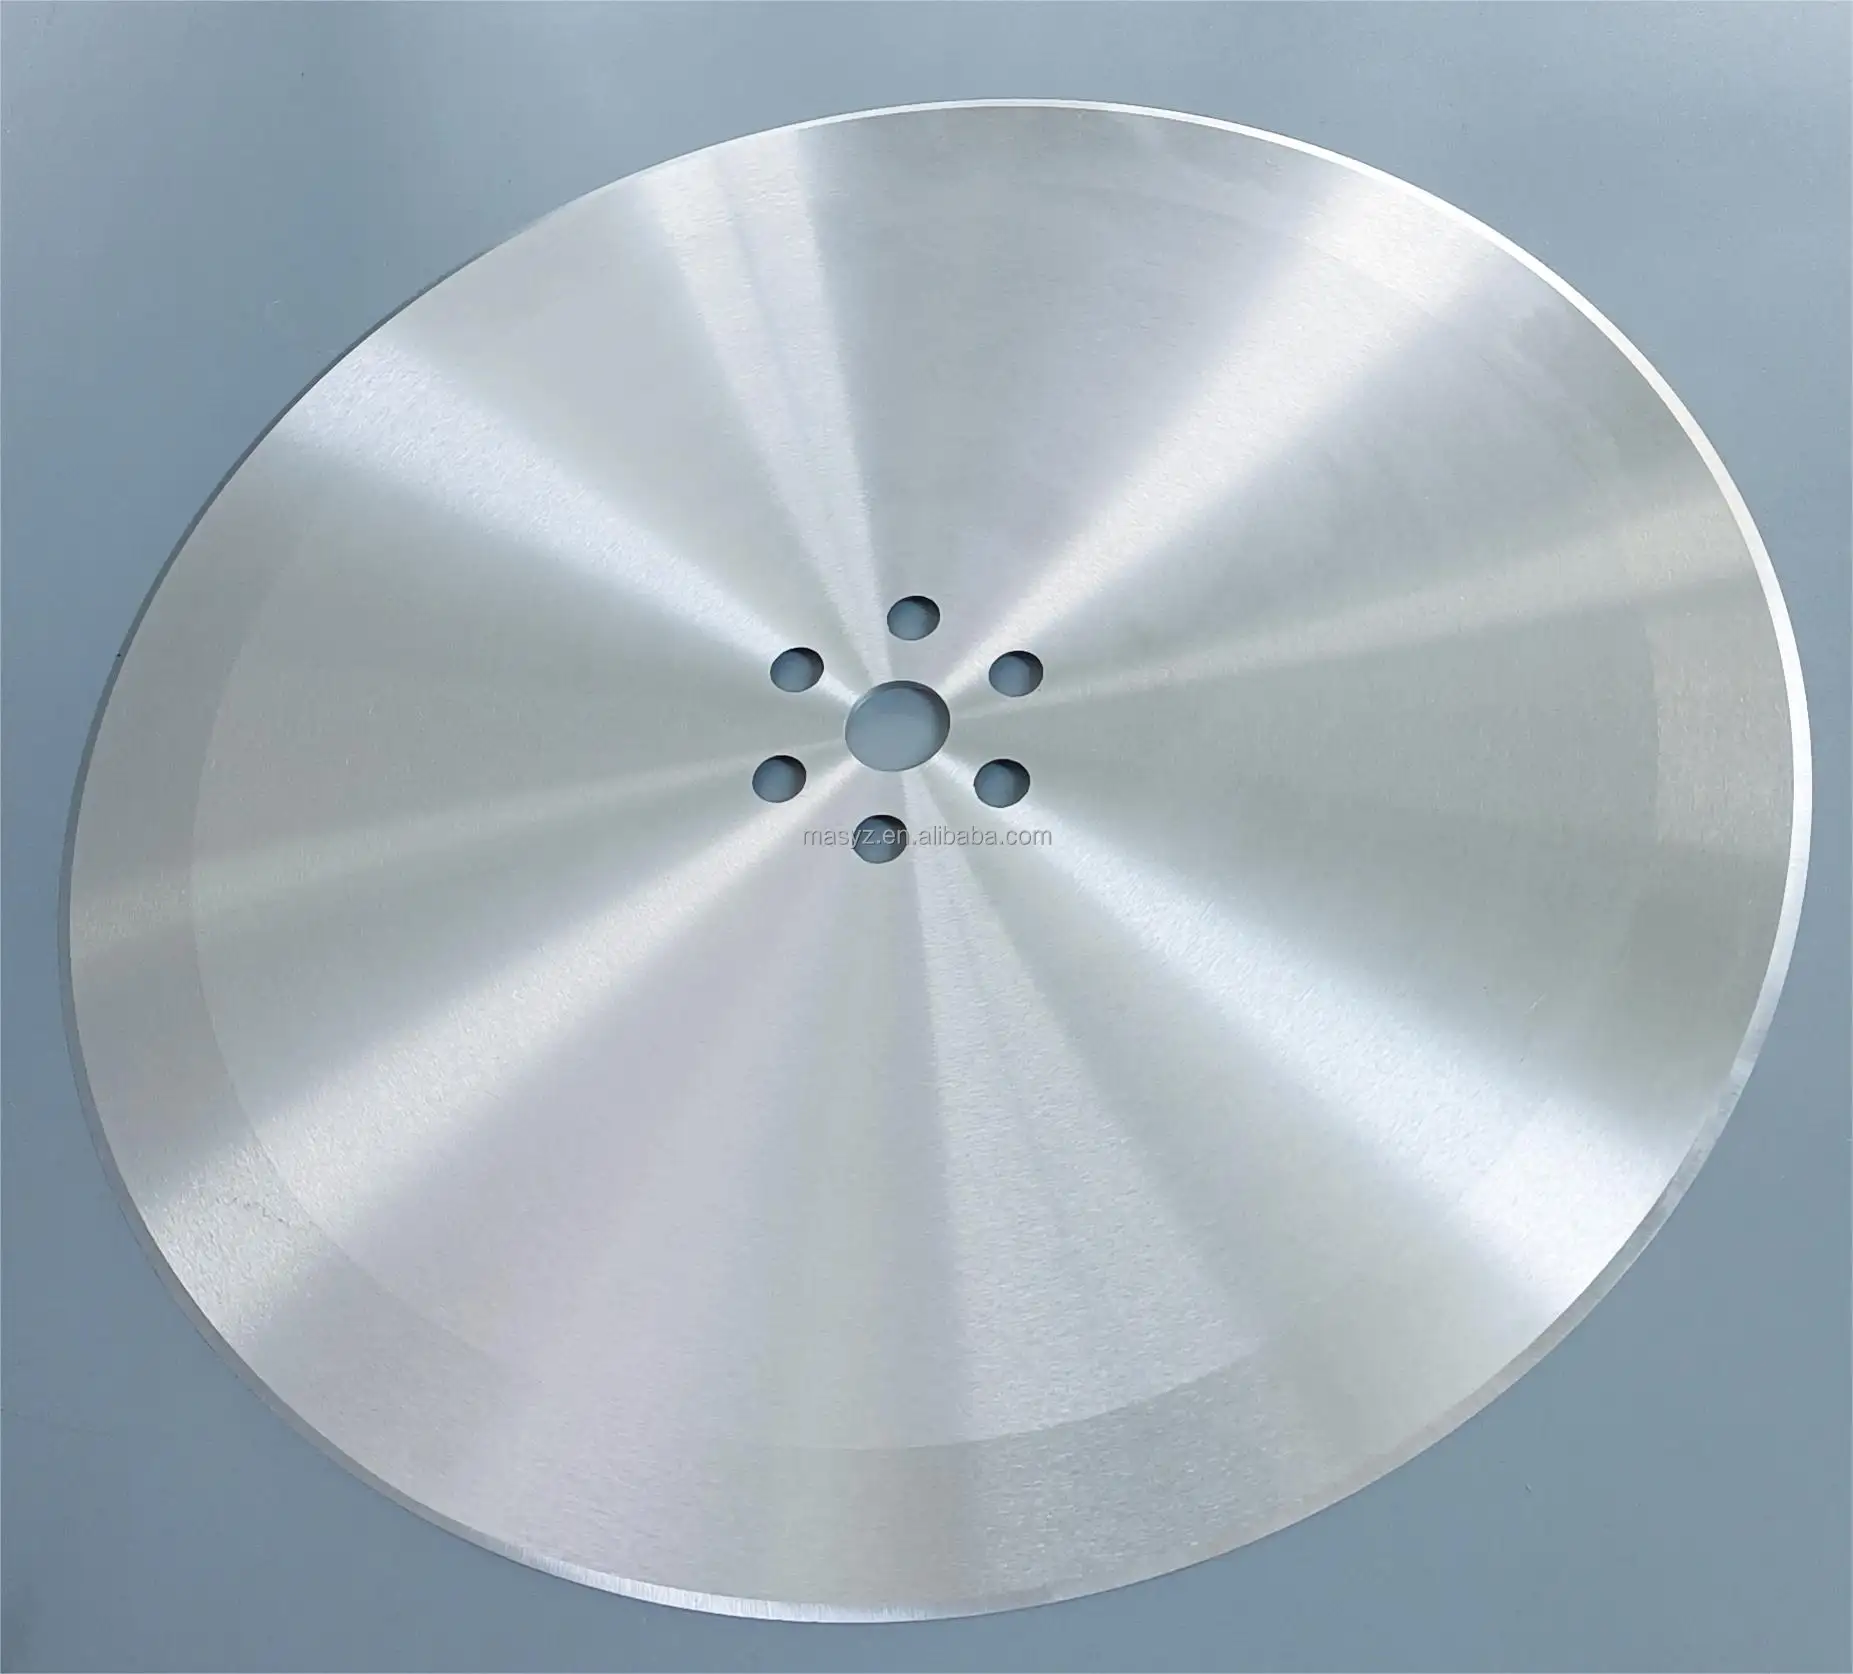 Ventes directes d'usine divers matériaux coupeur rotatif grande lame ronde pour papier toilette